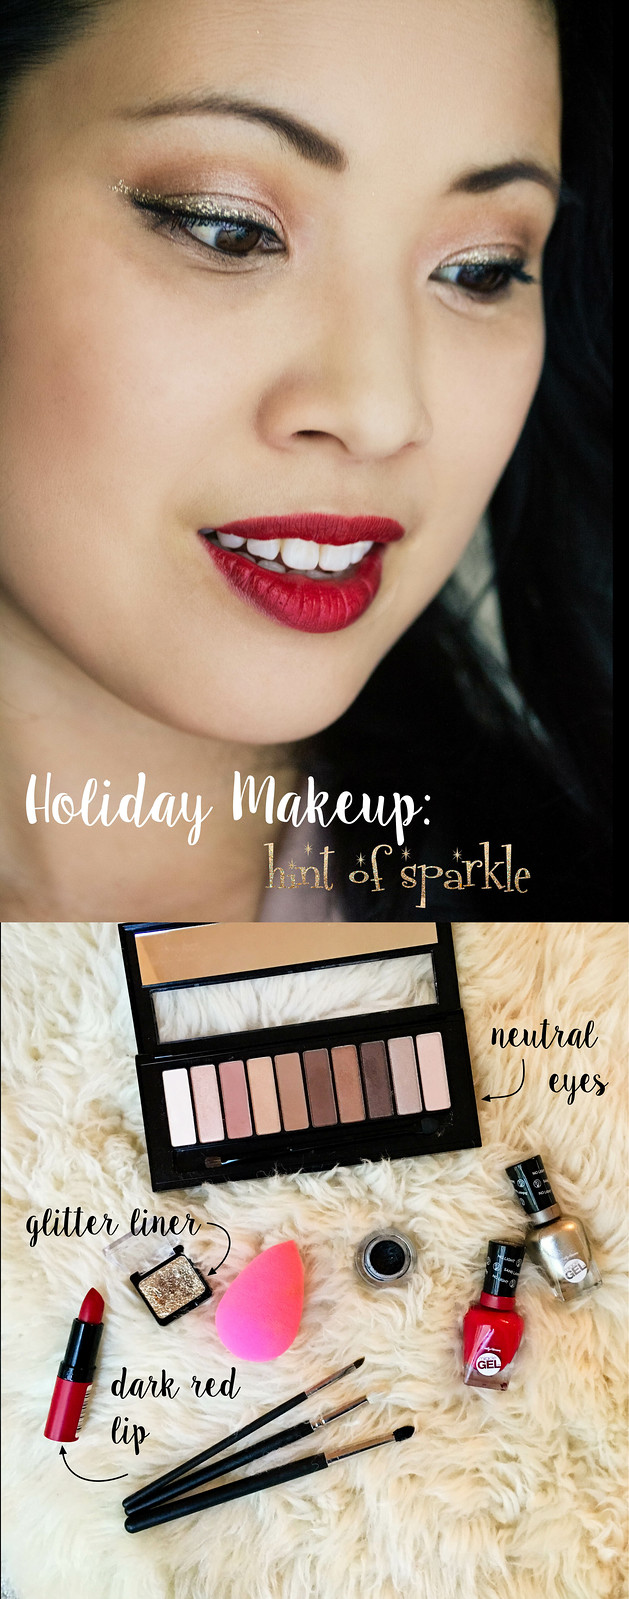 Holiday makeup tutorial: classic glamour makeup